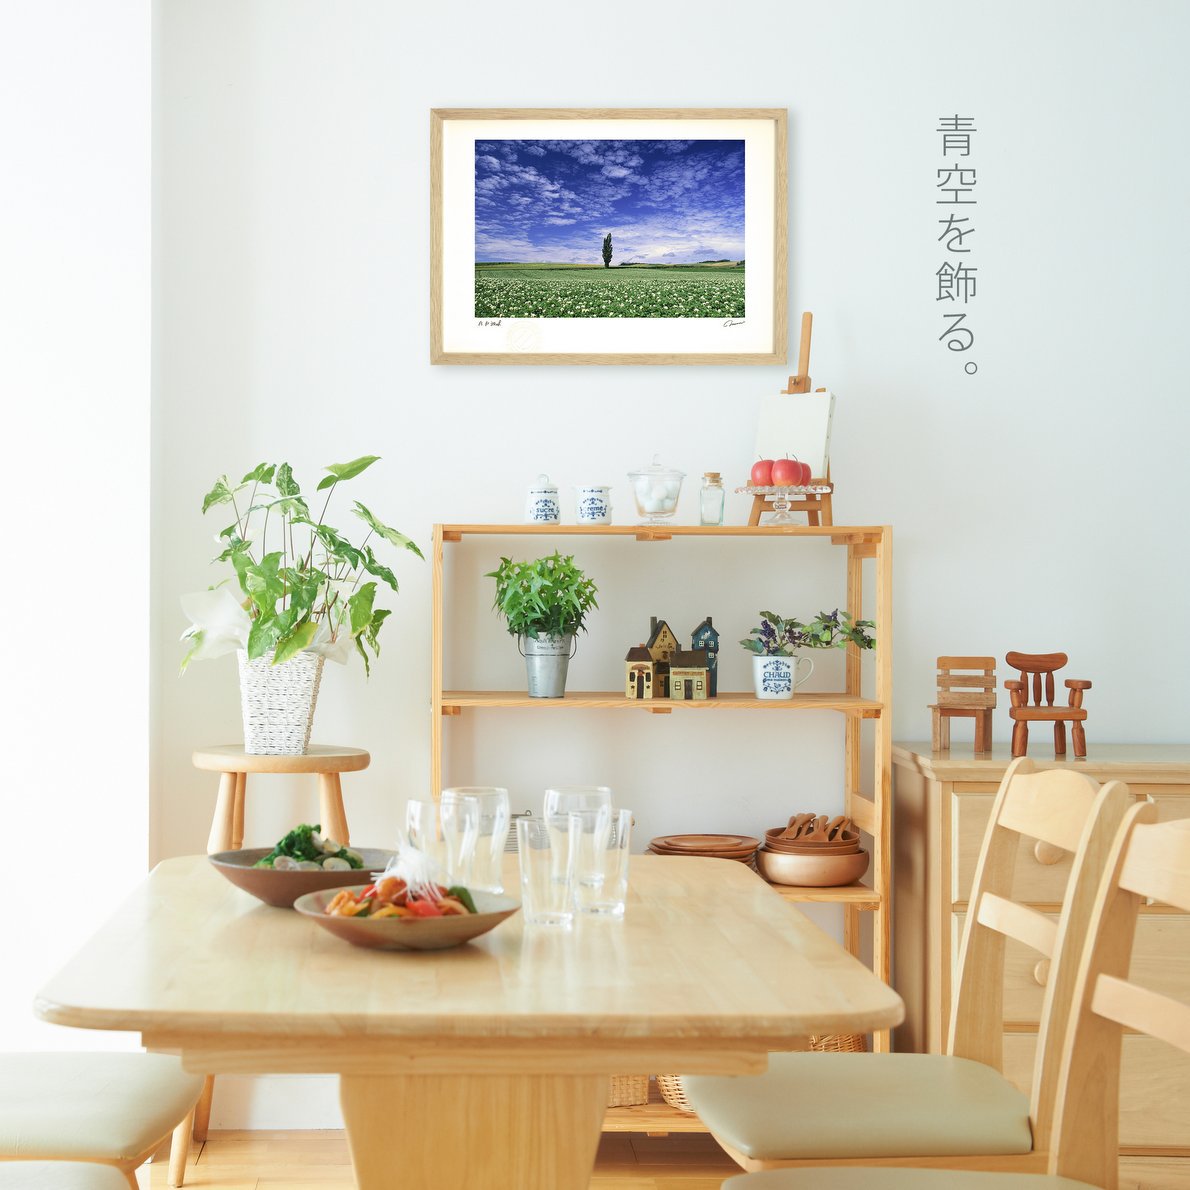 アートフォト スペイン ラマンチャ地方 ドンキホーテの風車 レンタル対象 絵画や壁掛け販売 日本唯一の風景専門店 R あゆわら